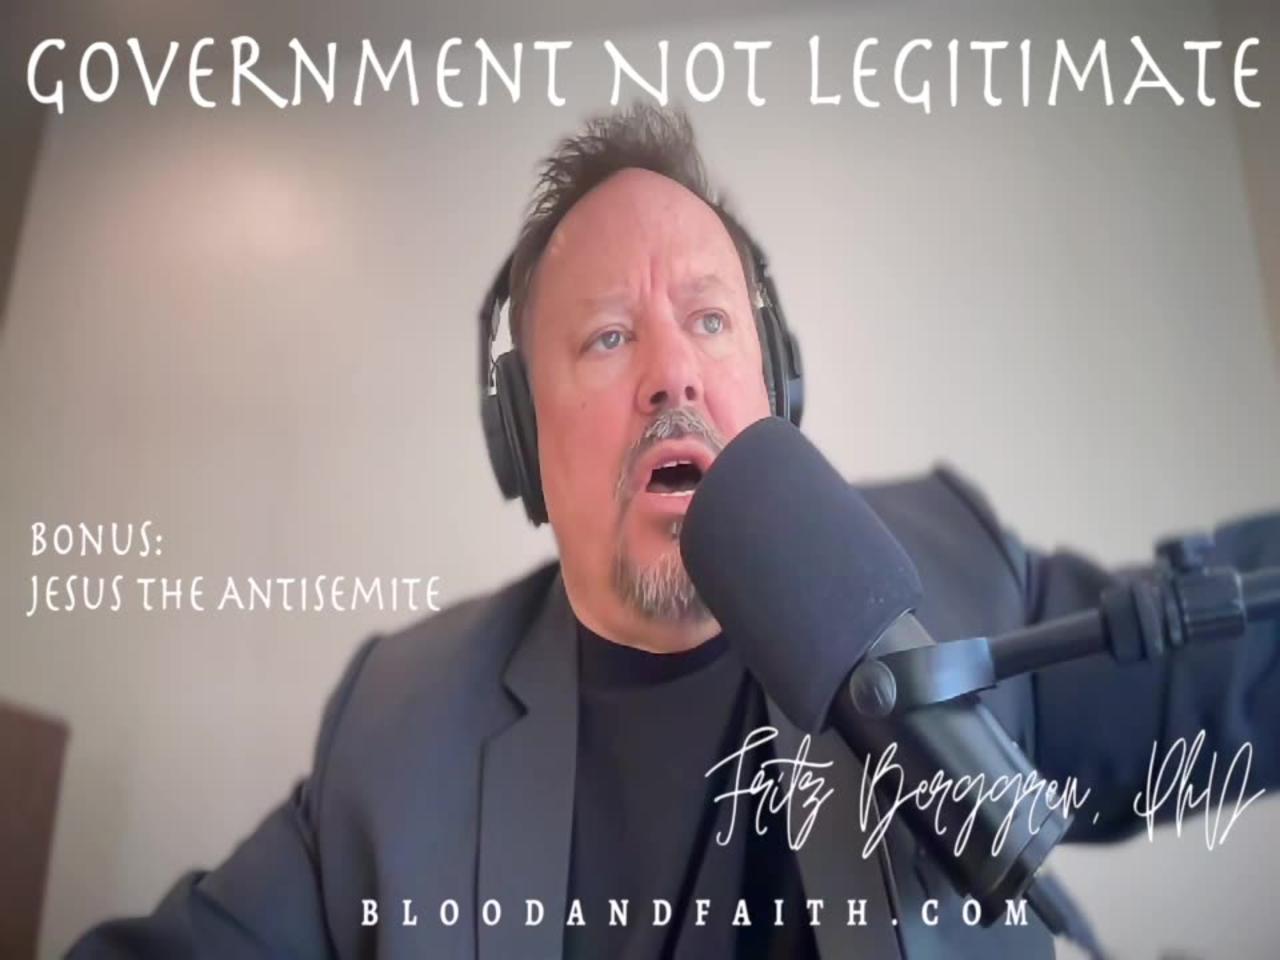 Government Illegitimate & Jesus the Antisemite